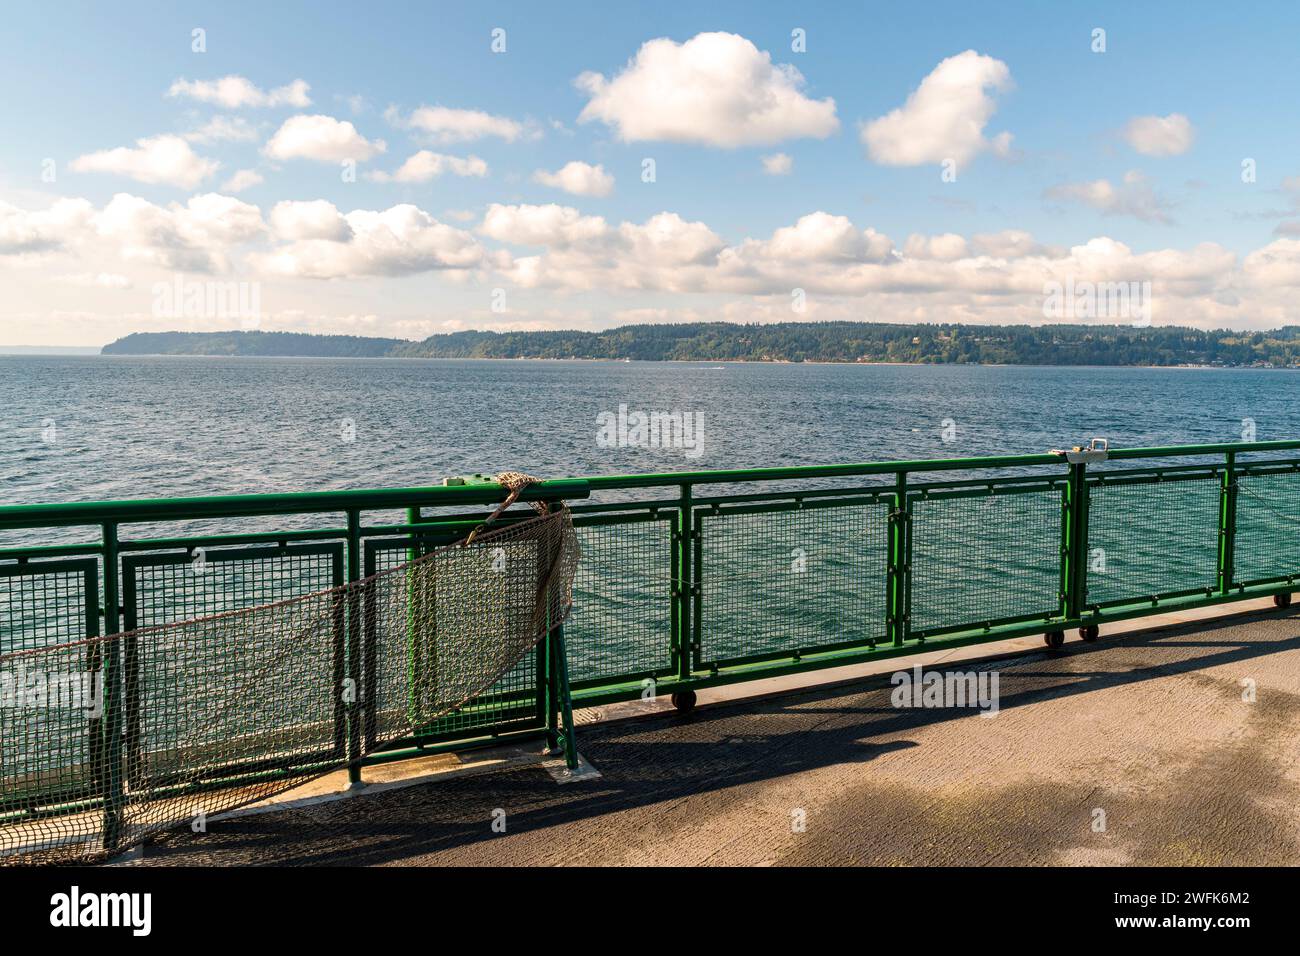 Whidbey Island befindet sich am Horizont dieses horizontalen Fotos, aufgenommen von einem Boot der Washington State Ferry, mit einem grünen Geländer, das den Rahmen teilt. Stockfoto